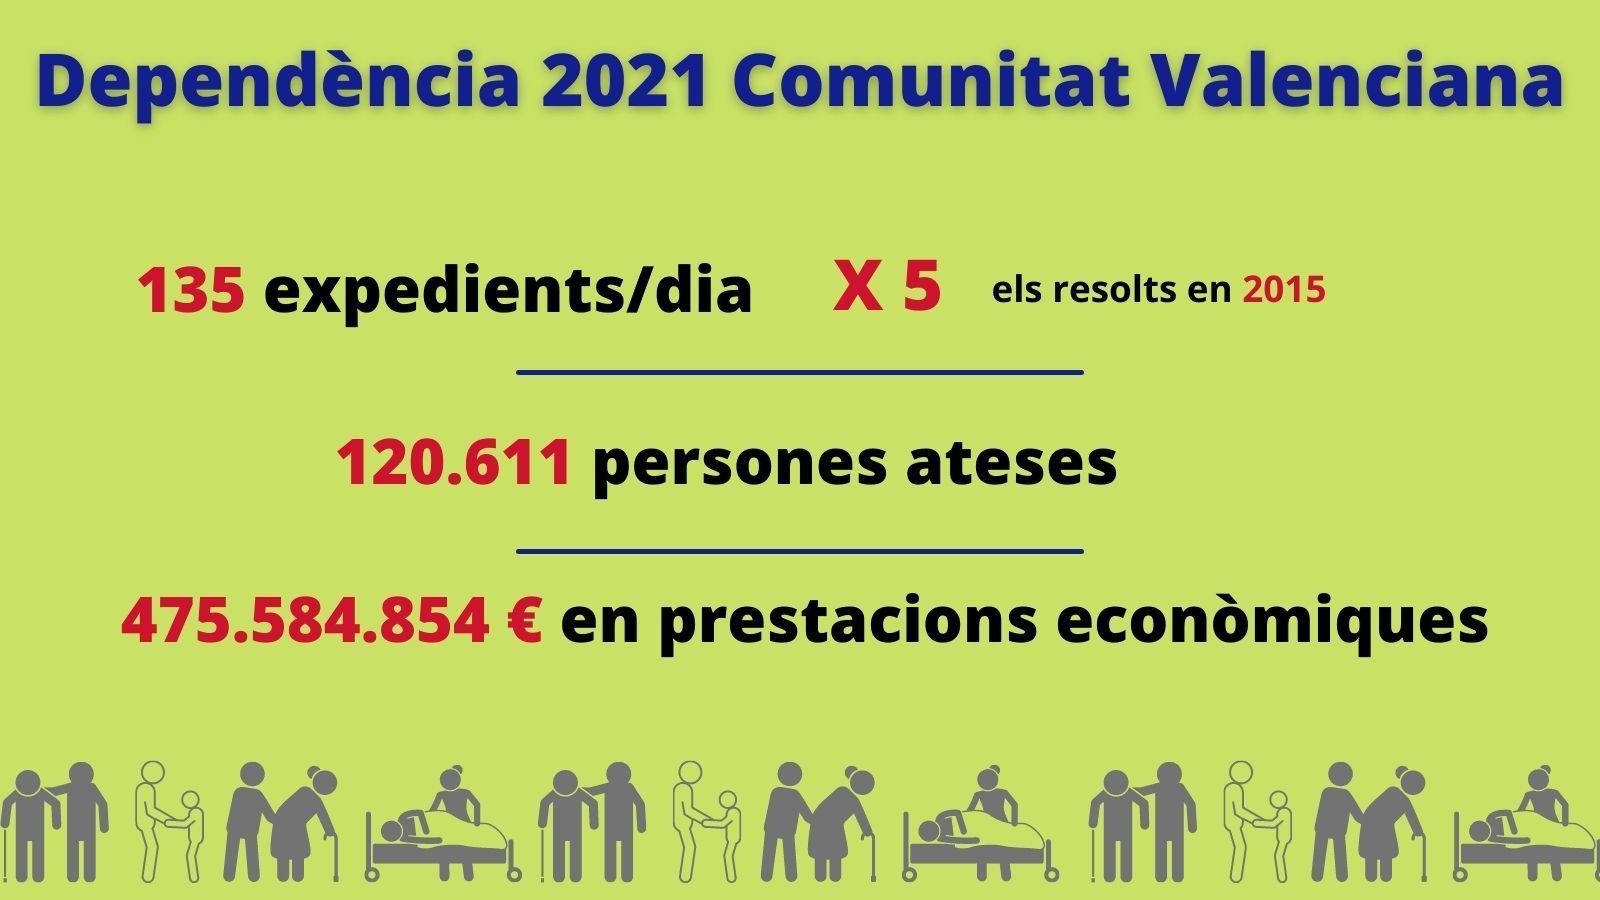 El servei valencià d'atenció a la dependència va resoldre en 2021 el major nombre d'expedients des que la Llei va entrar en vigor